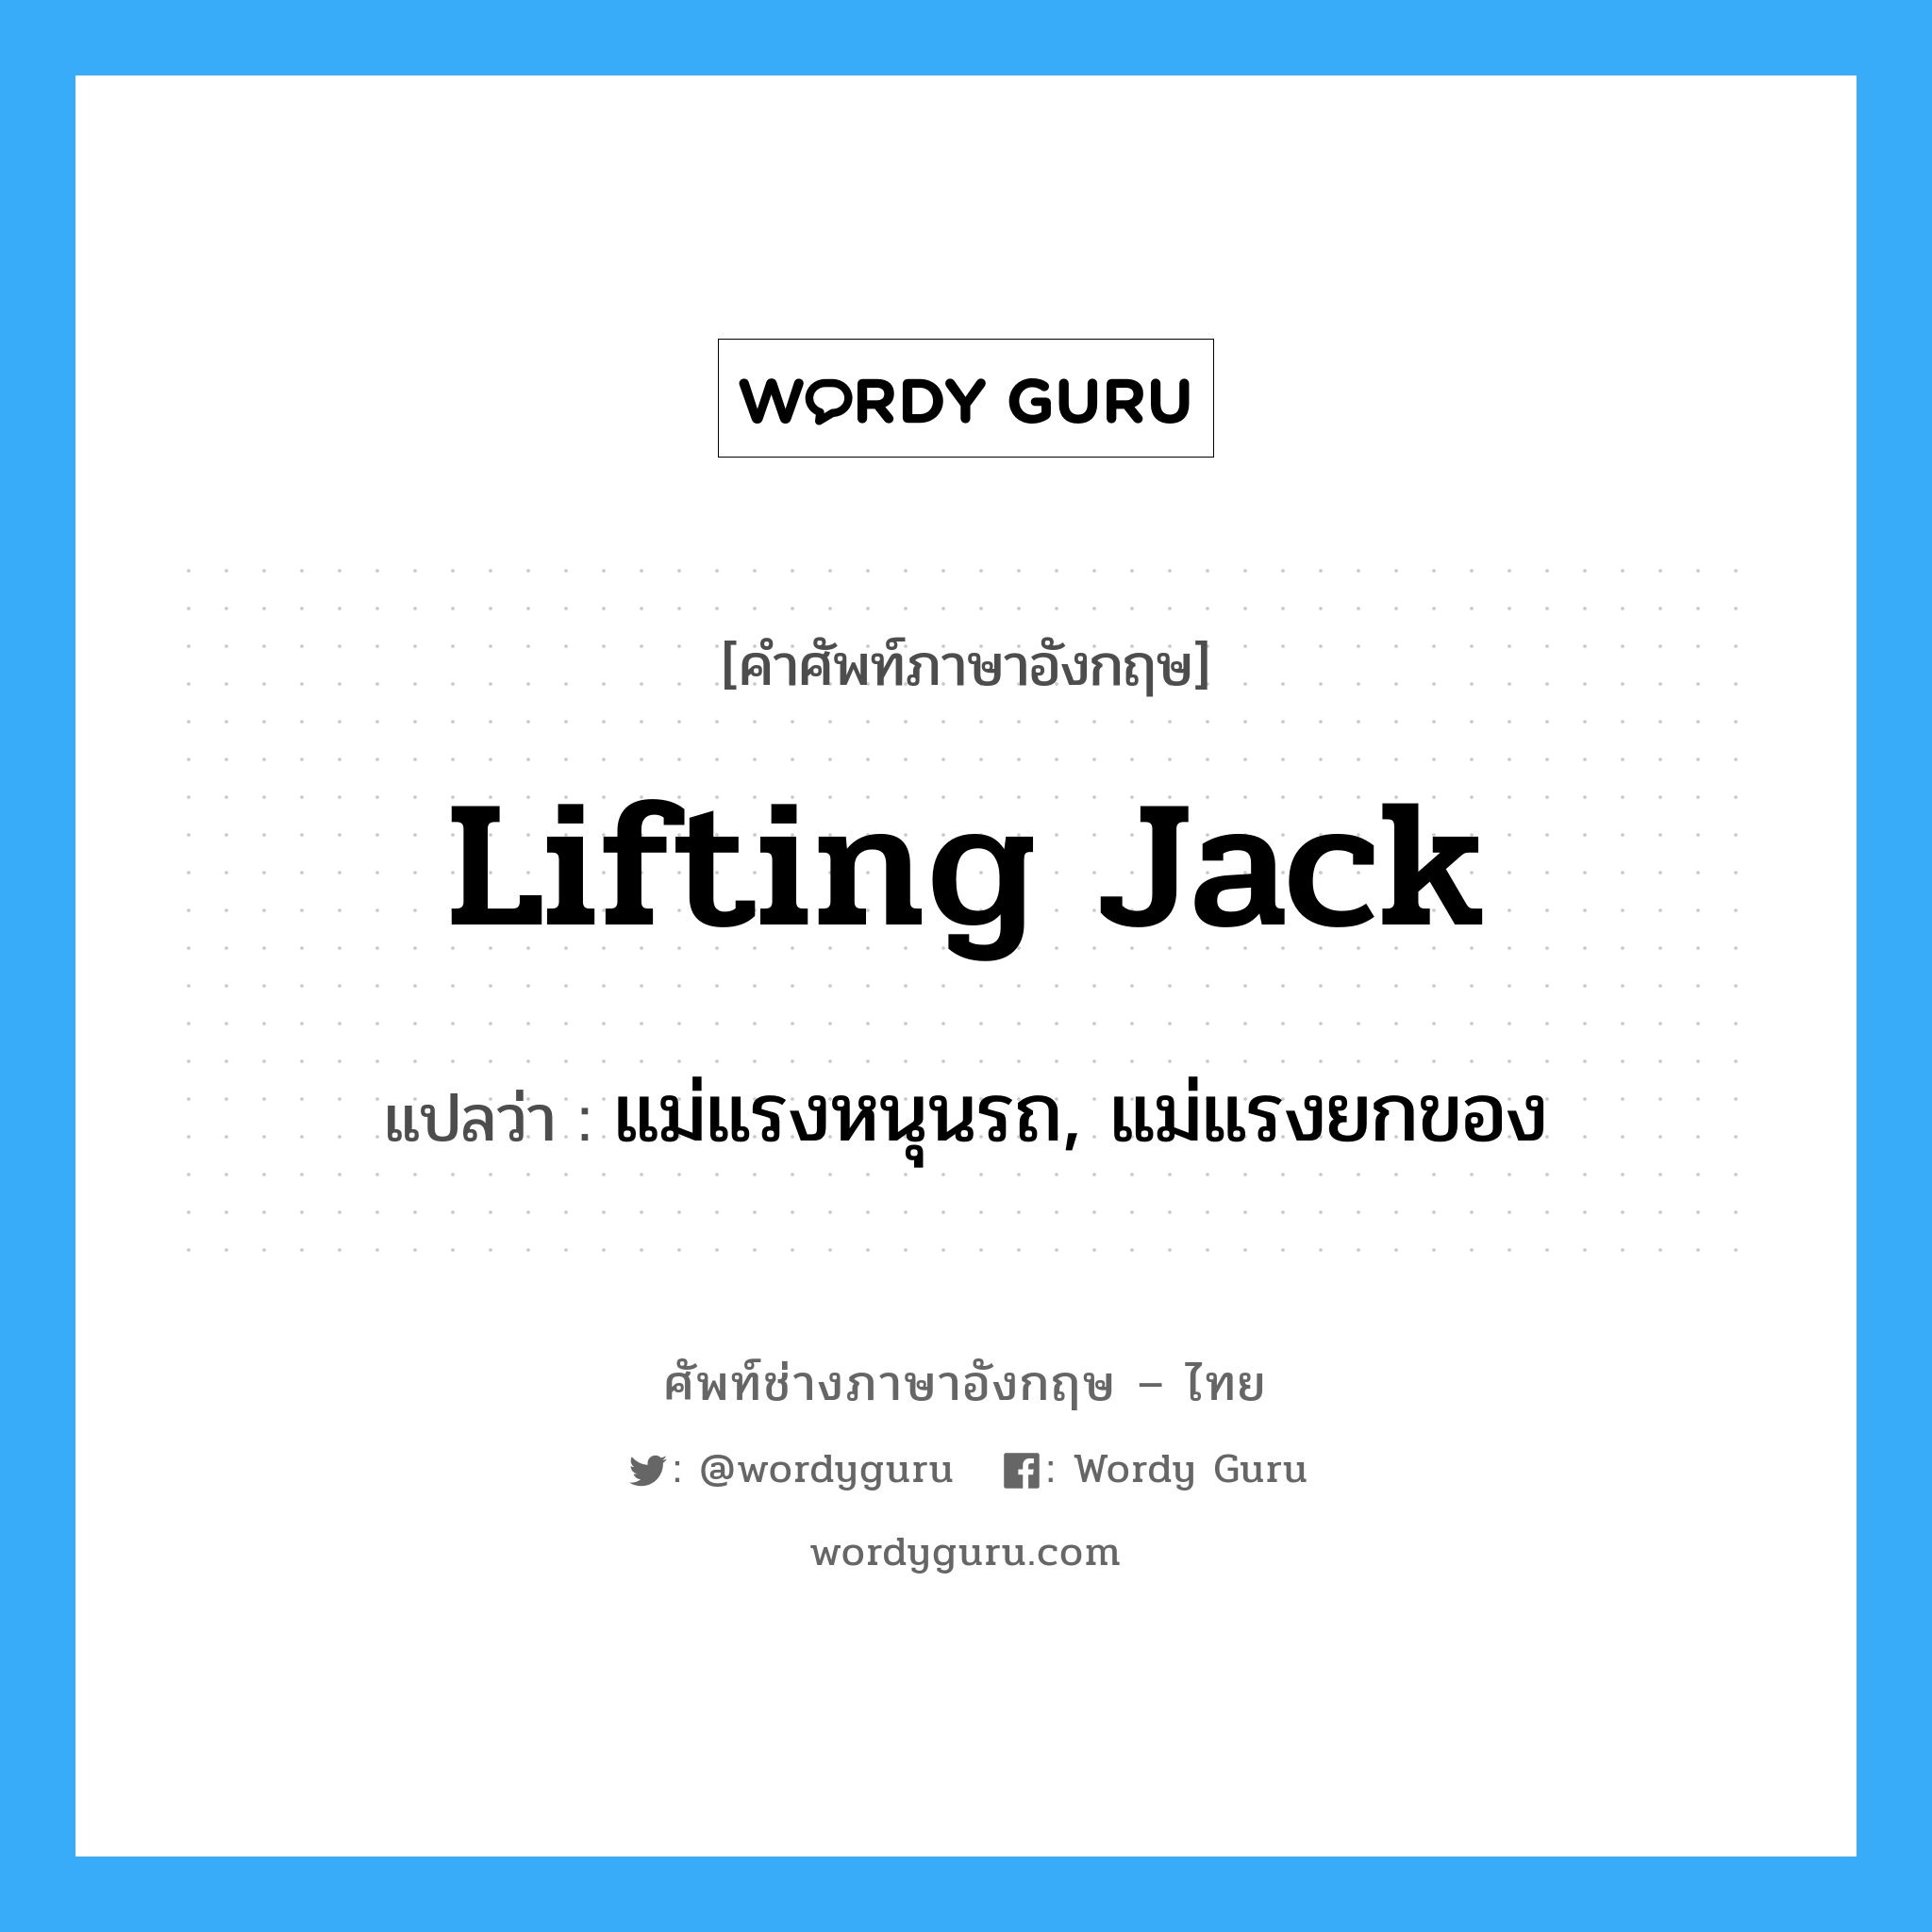 lifting jack แปลว่า?, คำศัพท์ช่างภาษาอังกฤษ - ไทย lifting jack คำศัพท์ภาษาอังกฤษ lifting jack แปลว่า แม่แรงหนุนรถ, แม่แรงยกของ